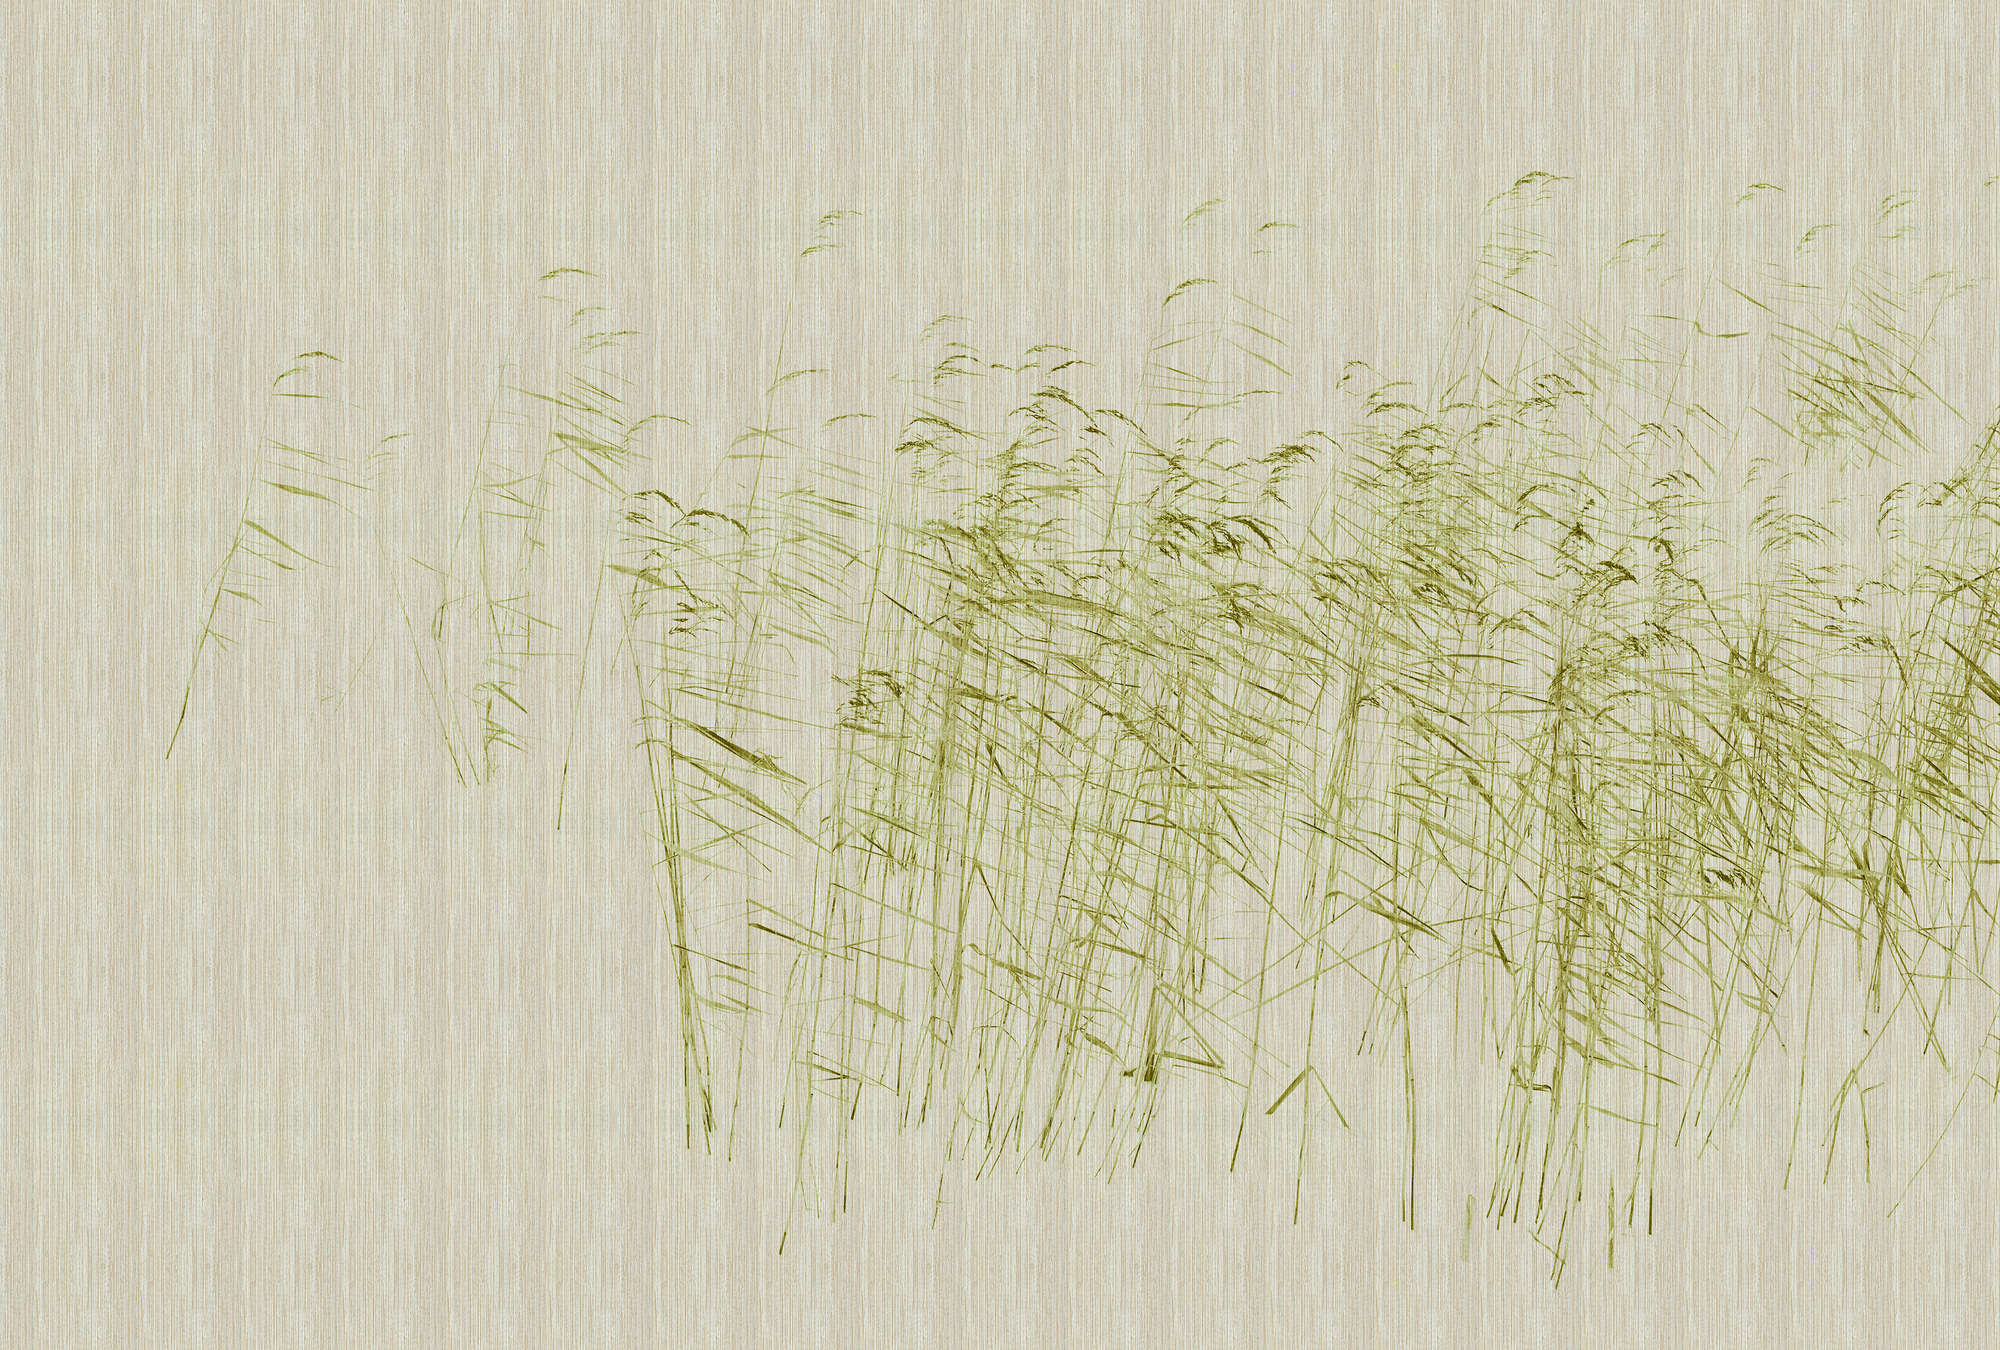             Allo stagno 1 - Natura Wallpaper steli di canna verde allo stagno
        